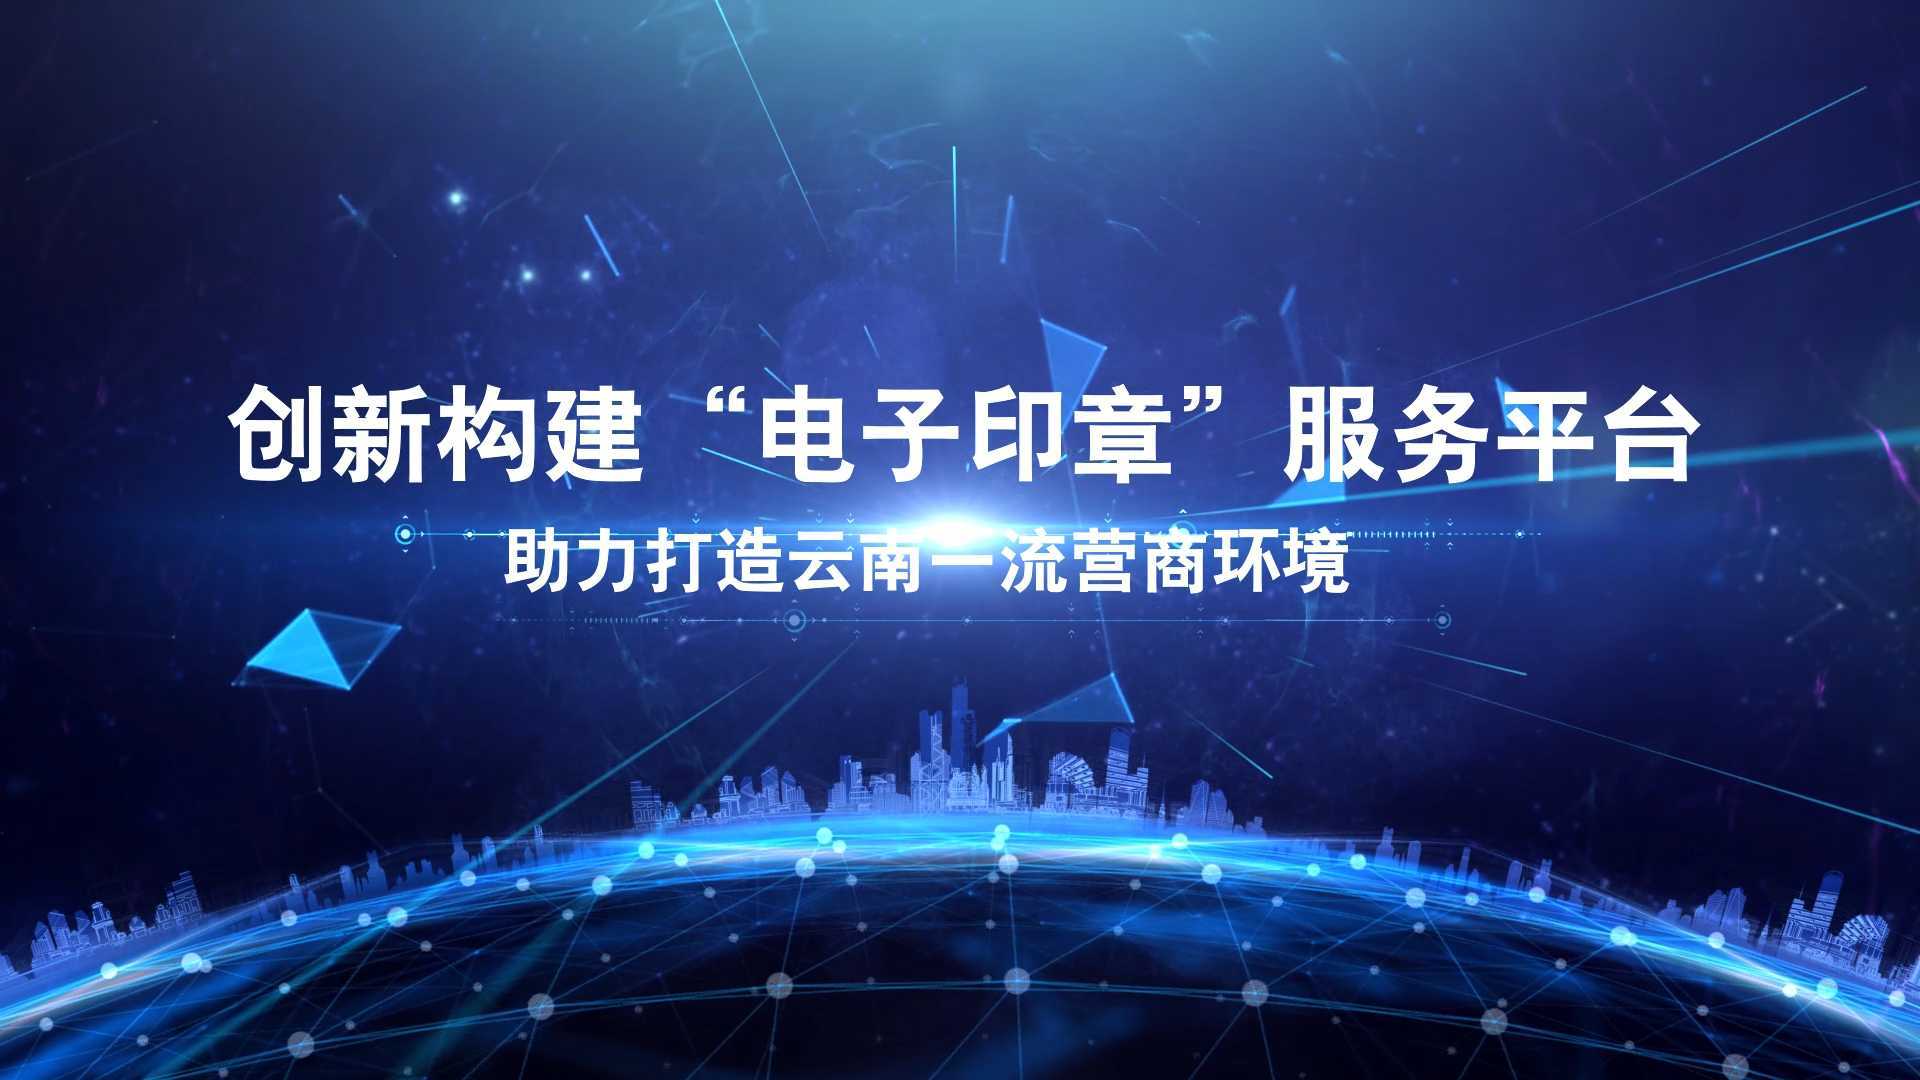 区块链物电同源电子印章产品发布会宣传片——云南